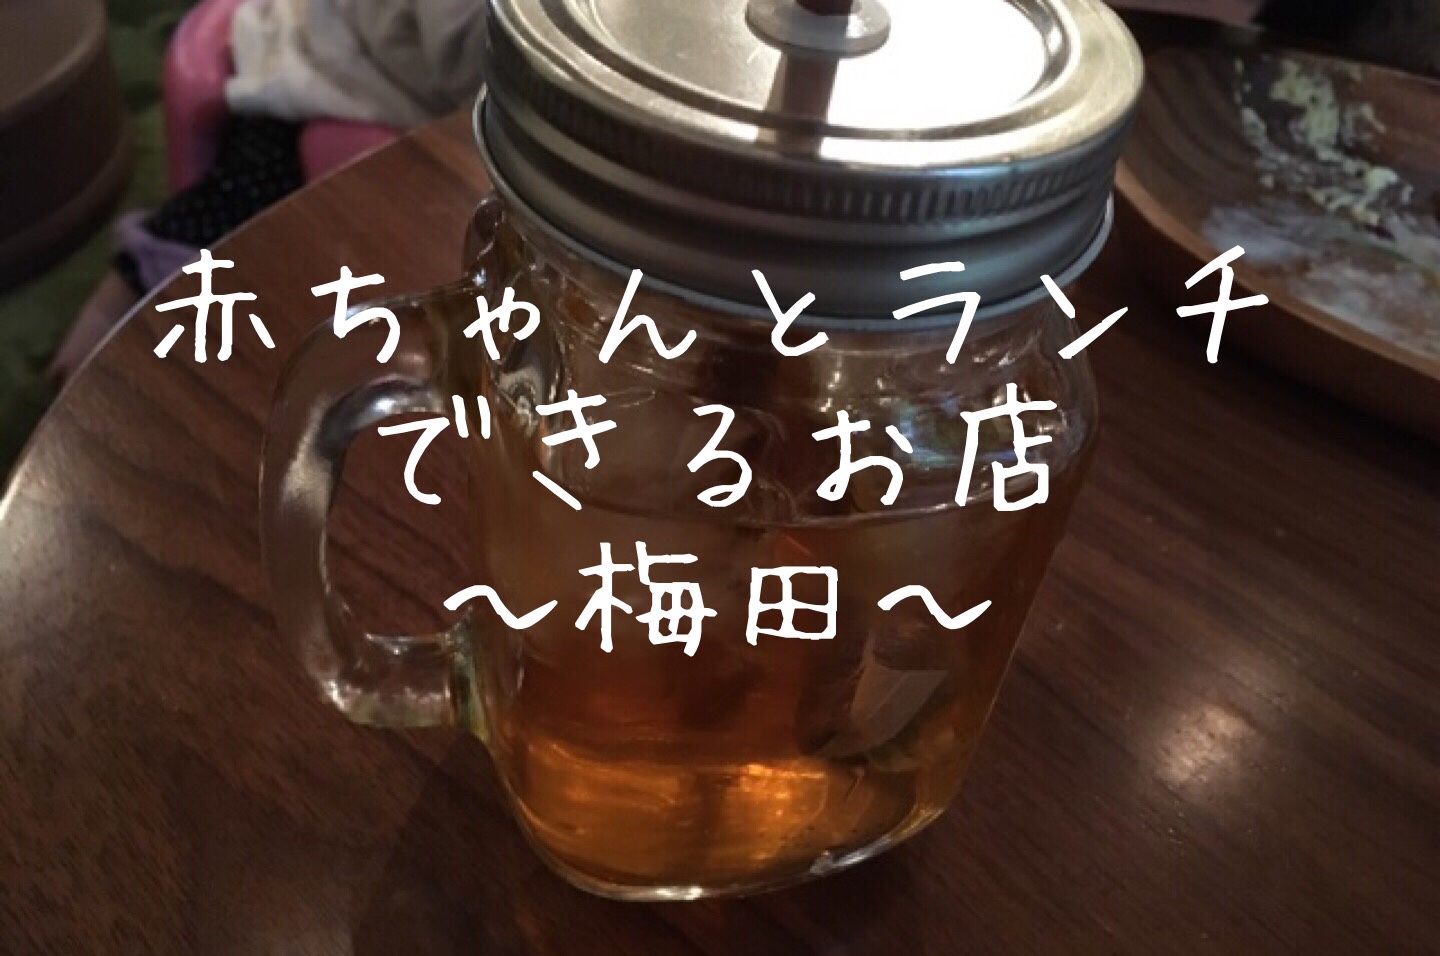 梅田で子連れランチ 0歳の赤ちゃんがねんねできるカフェ5選 大阪 Mamalife